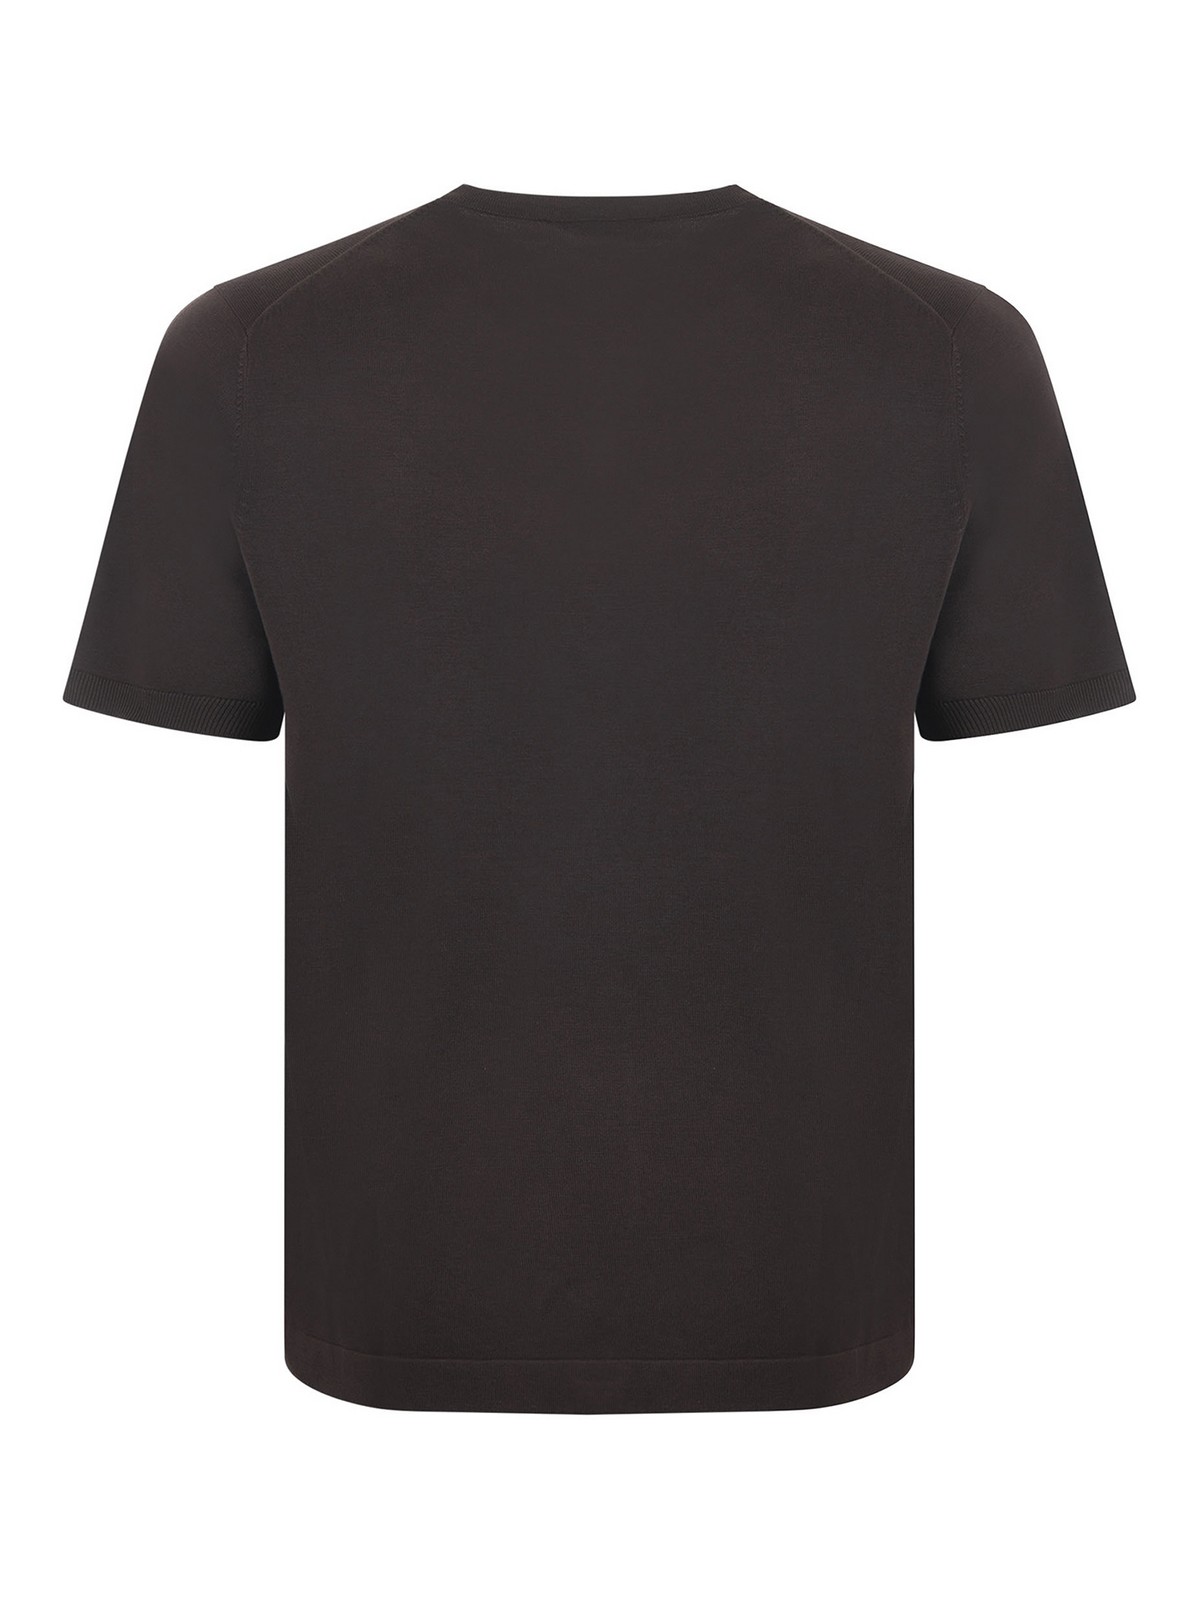 Shop Jeordie's Jeordies T-shirt In Dark Brown